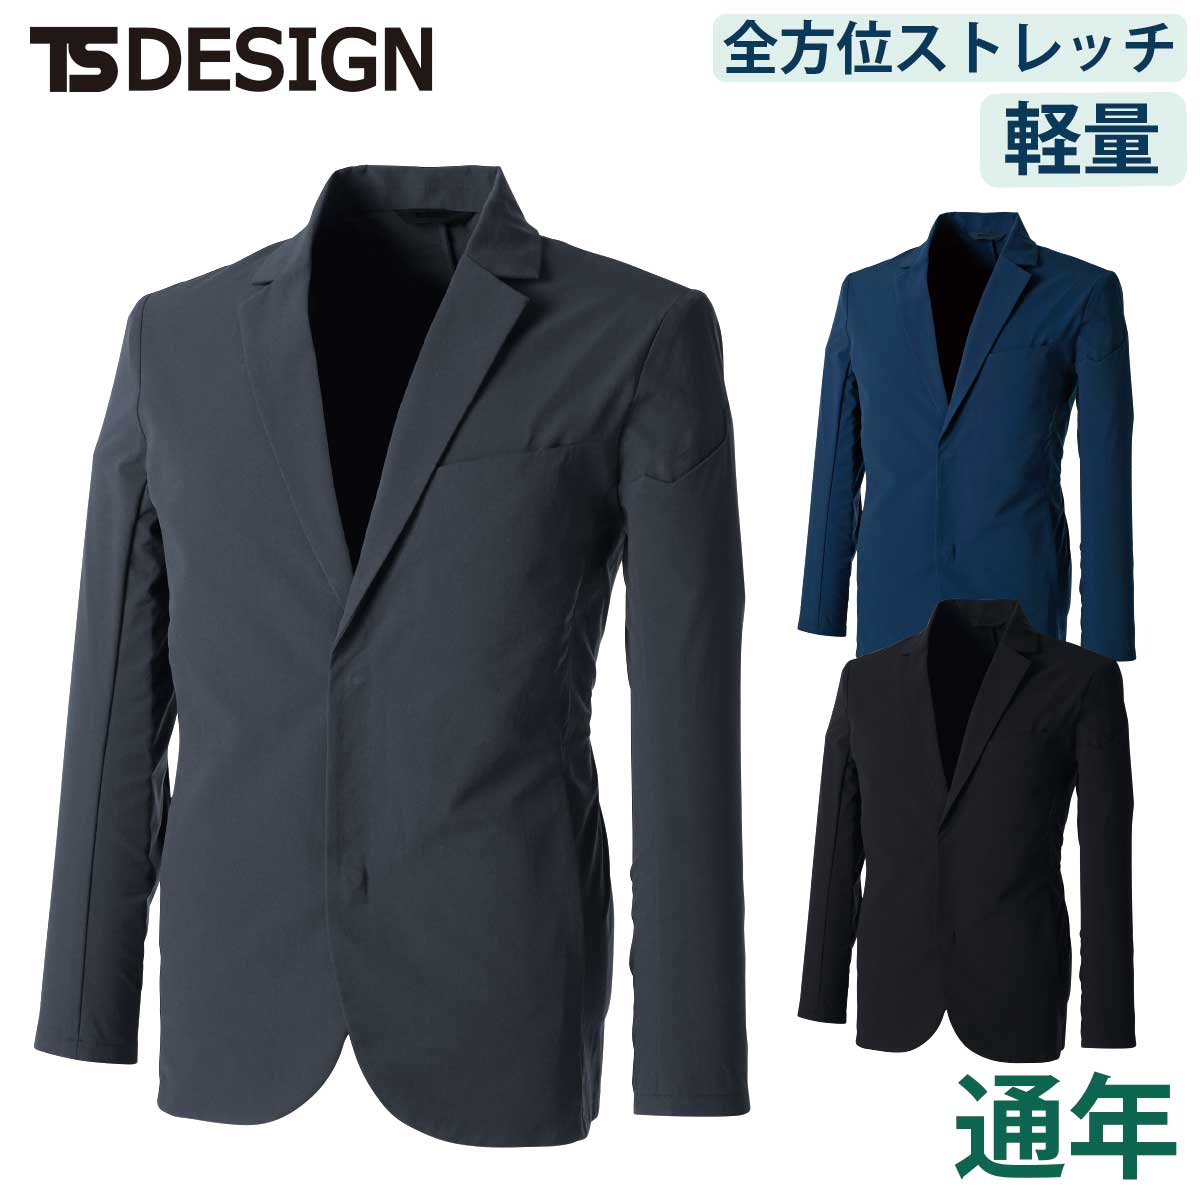 動けるスーツ 作業服メーカーが本気で考えたジャケット TS 4Dストレッチ ステルスメンズジャケット TSDESIGN オールシーズン 藤和 9136